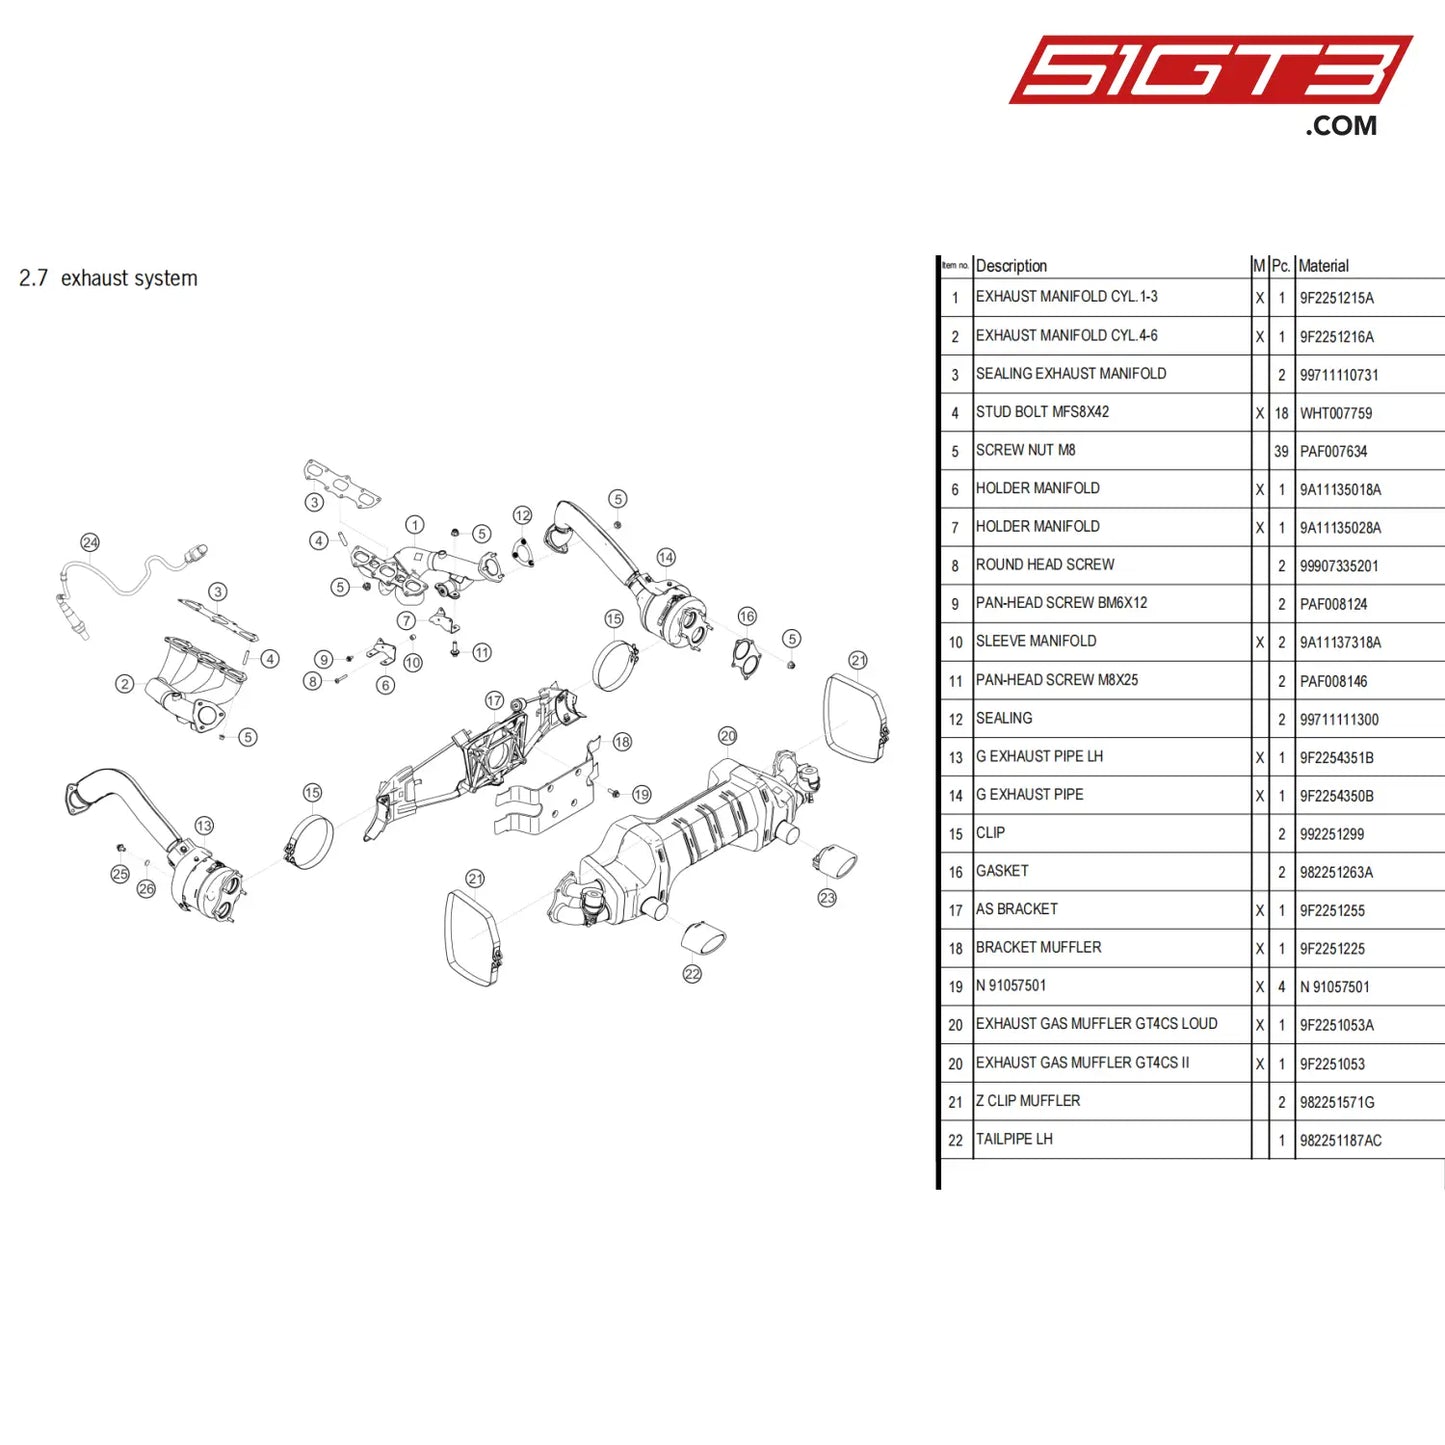 Z Clip Muffler - 982251571G [Porsche 718 Cayman Gt4 Clubsport] Exhaust System